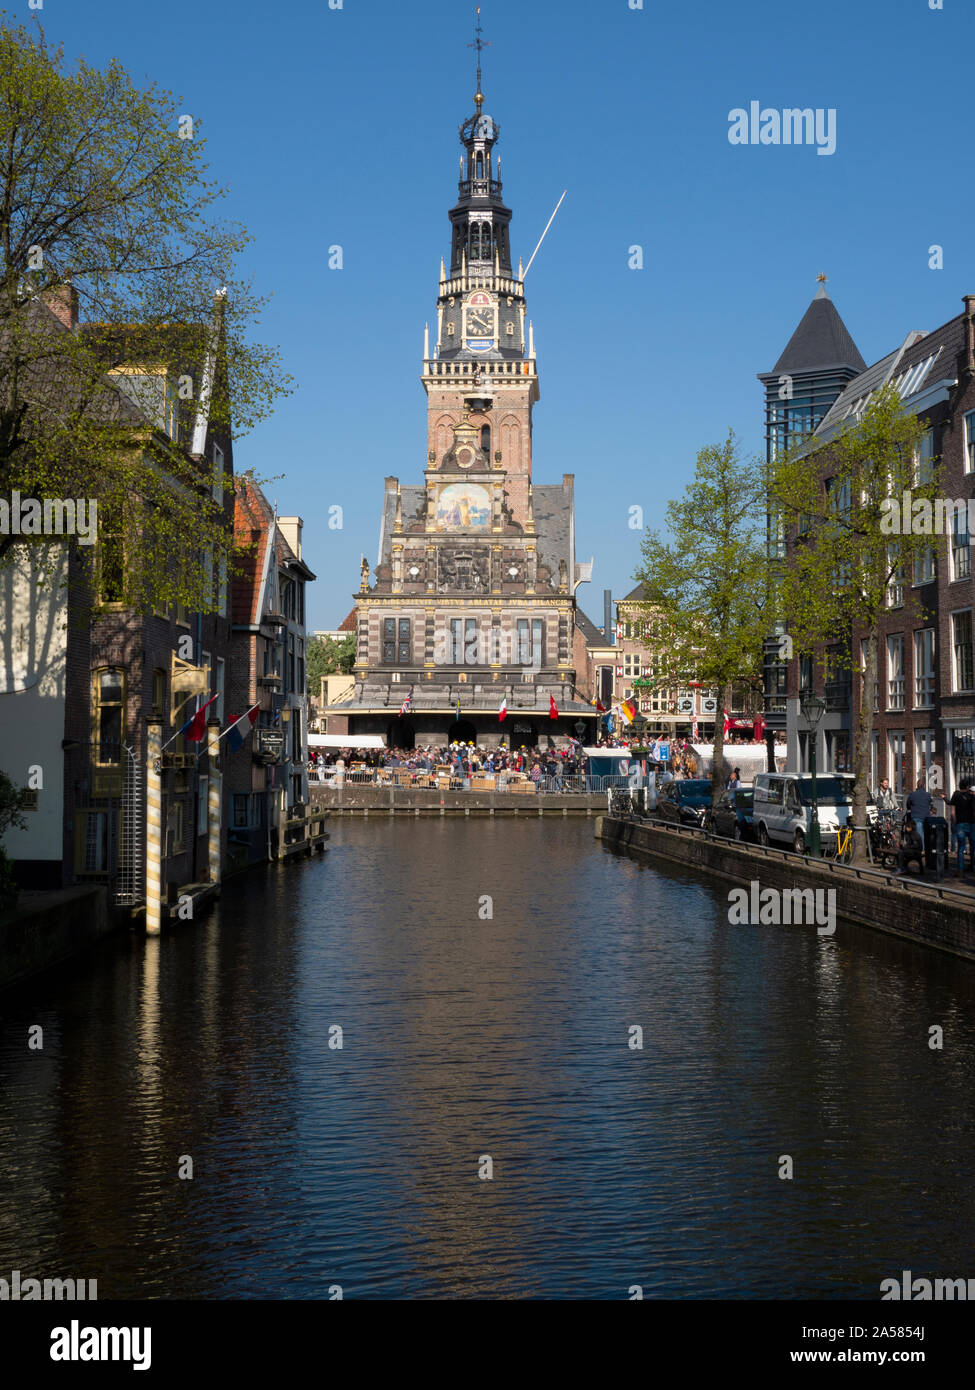 Maison de pesage Waag et canal dans la vieille ville d'Alkmaar, Hollande du Nord, Pays-Bas Banque D'Images